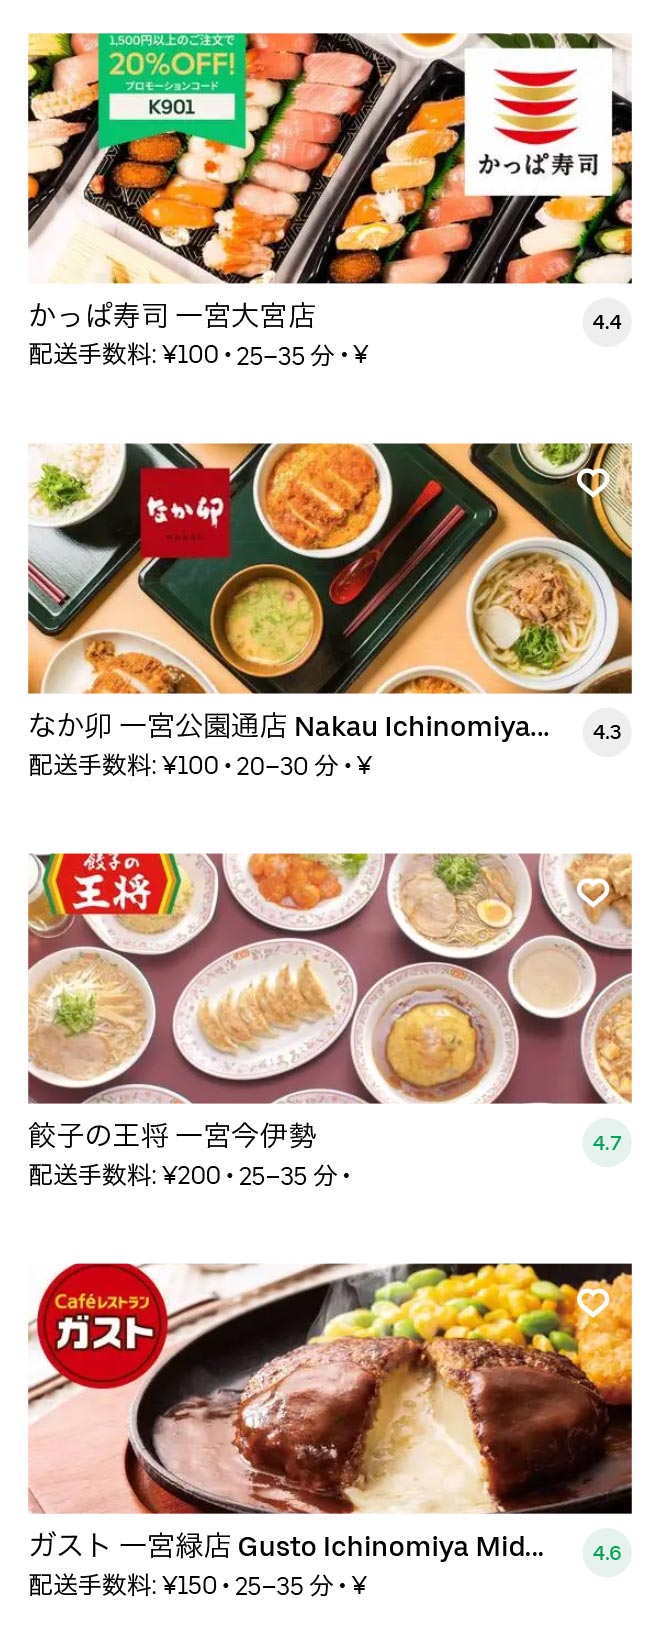 Ichinomiya menu 2010 07